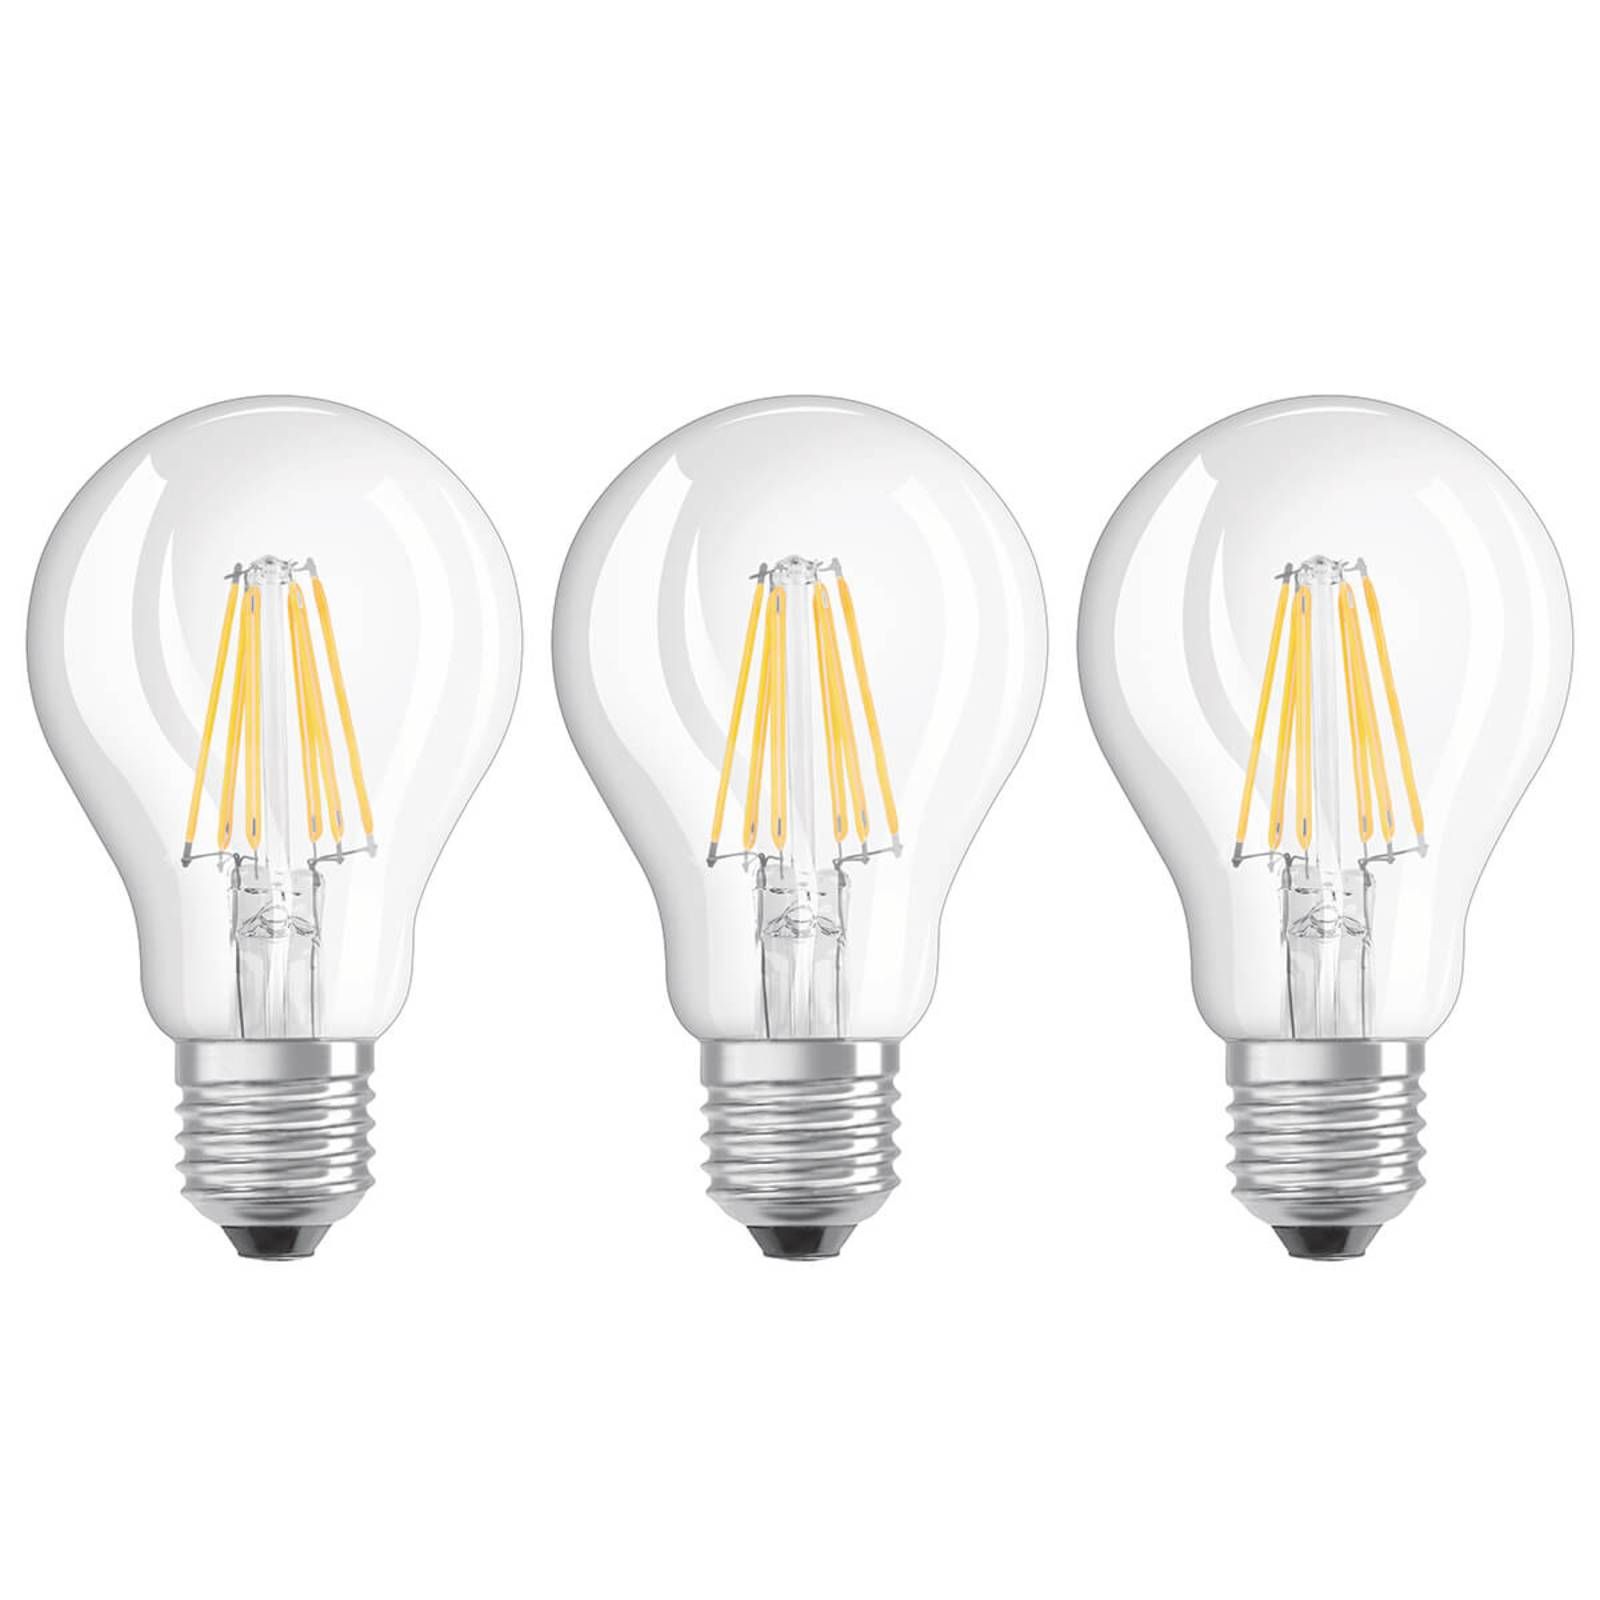 OSRAM Filament LED žiarovka E27 6W teplá biela sada 3 ks, E27, 6W, Energialuokka: E, P: 10.5 cm